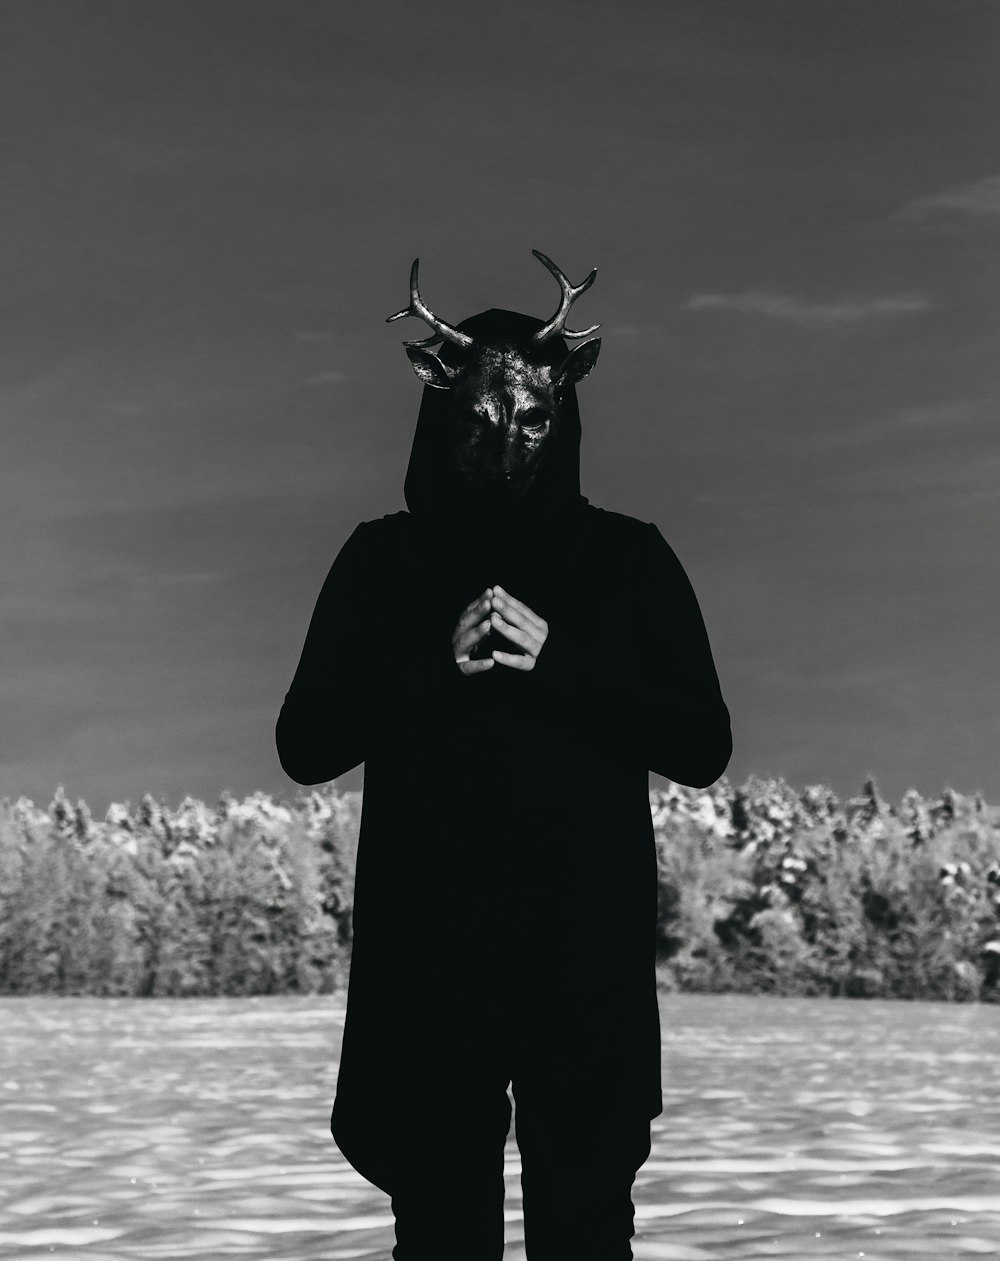 une personne portant un masque de chèvre debout dans un champ